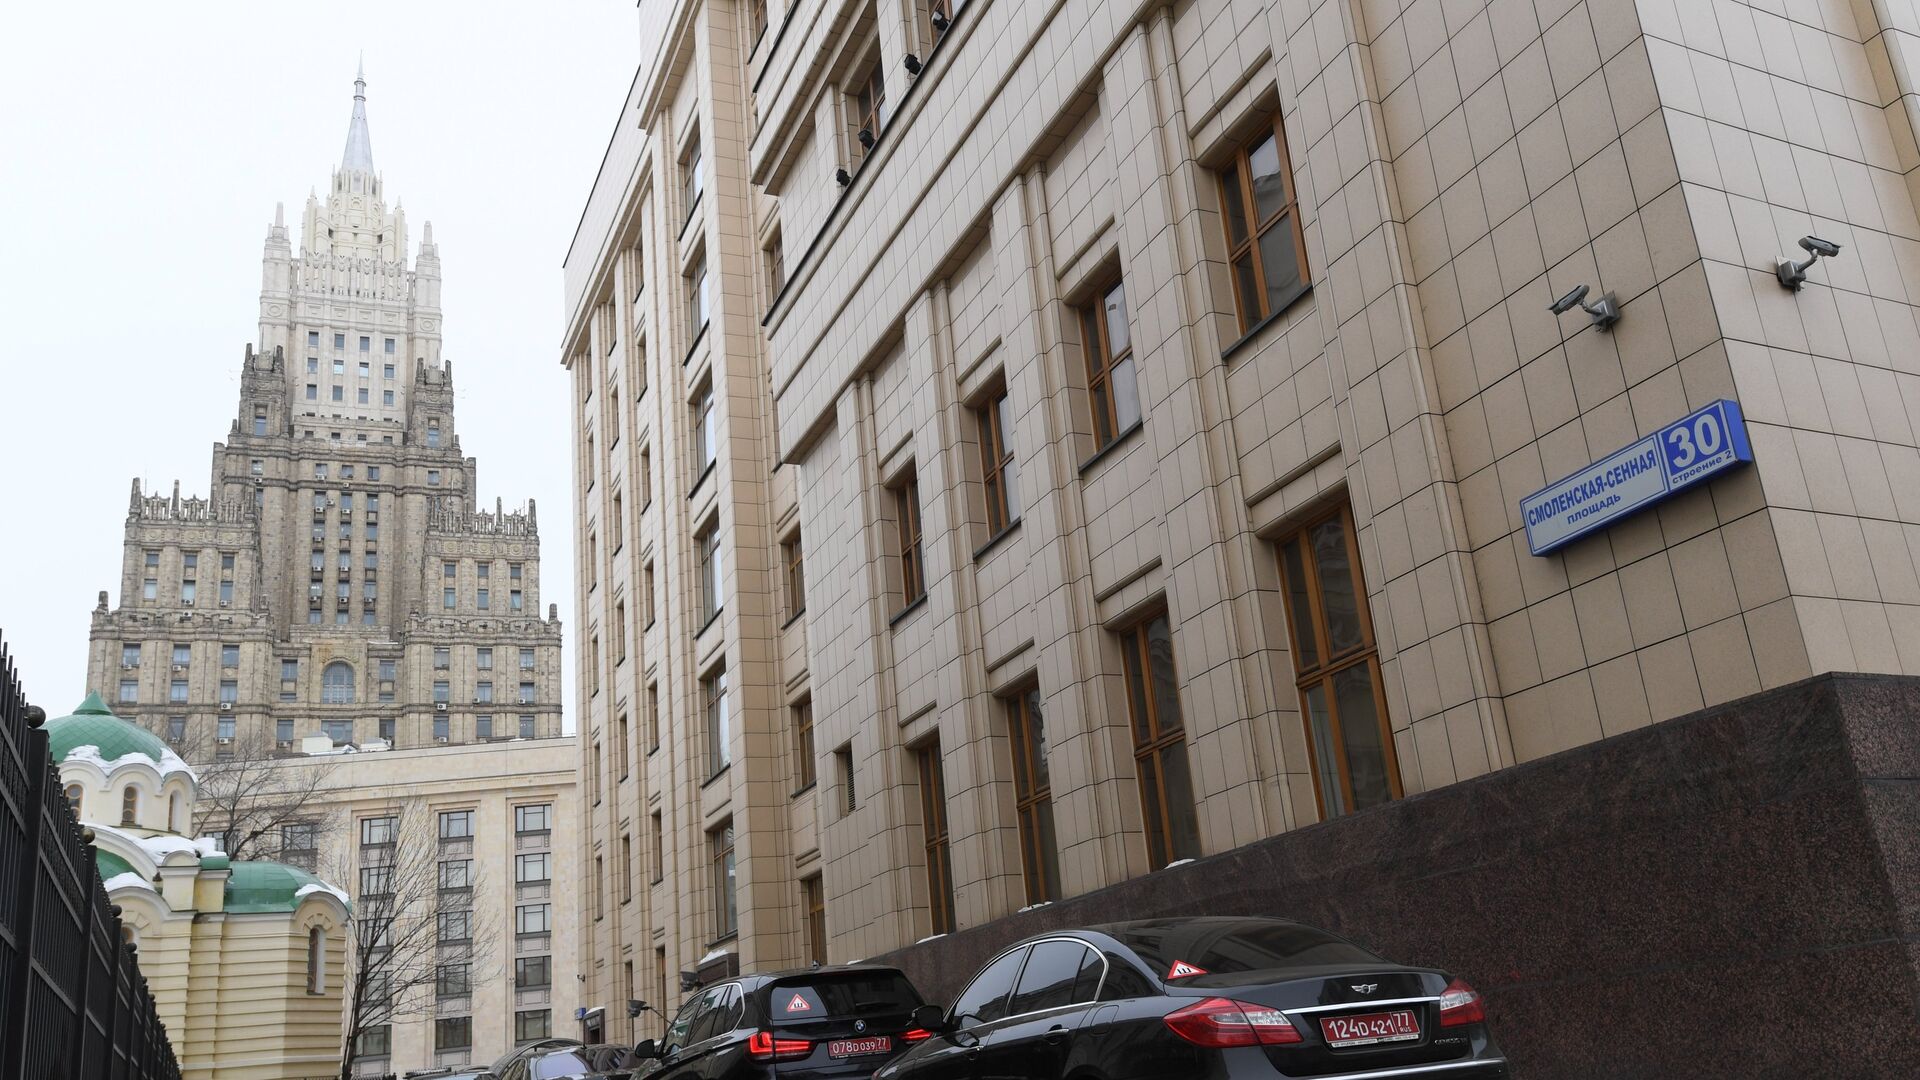 Automobili diplomatskih misija ispred zgrade Ministarstva inostranih poslova Rusije - Sputnik Srbija, 1920, 08.12.2021